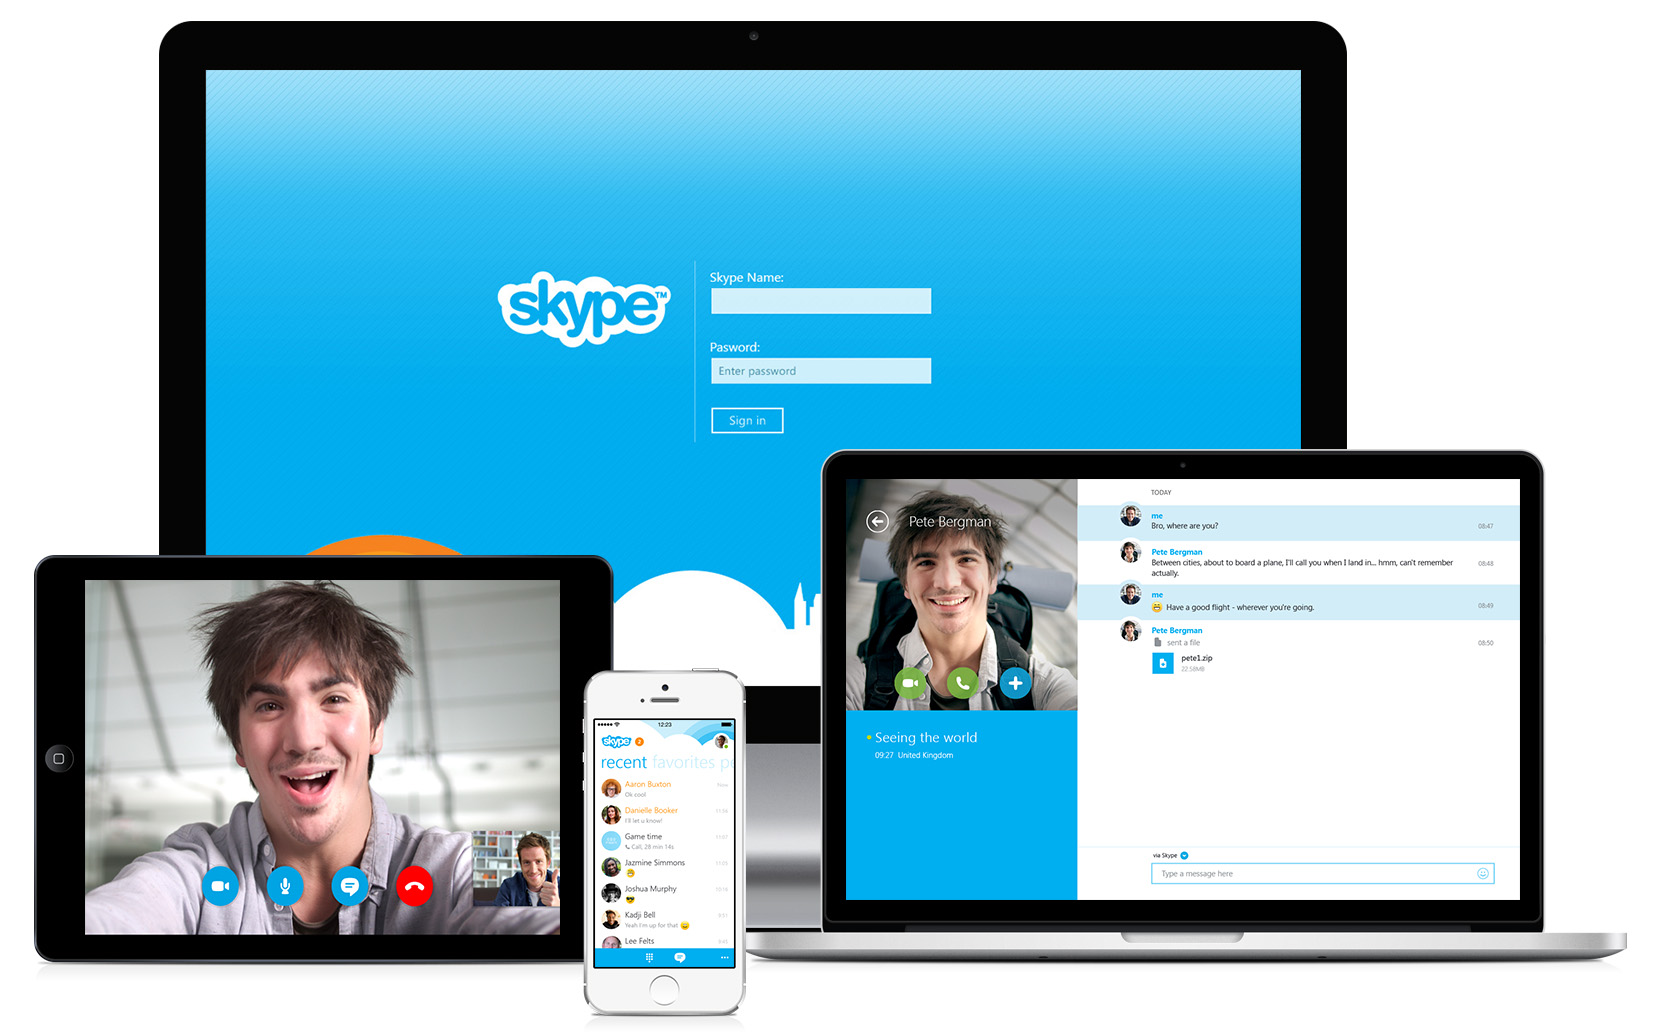 اسکایپ چیست